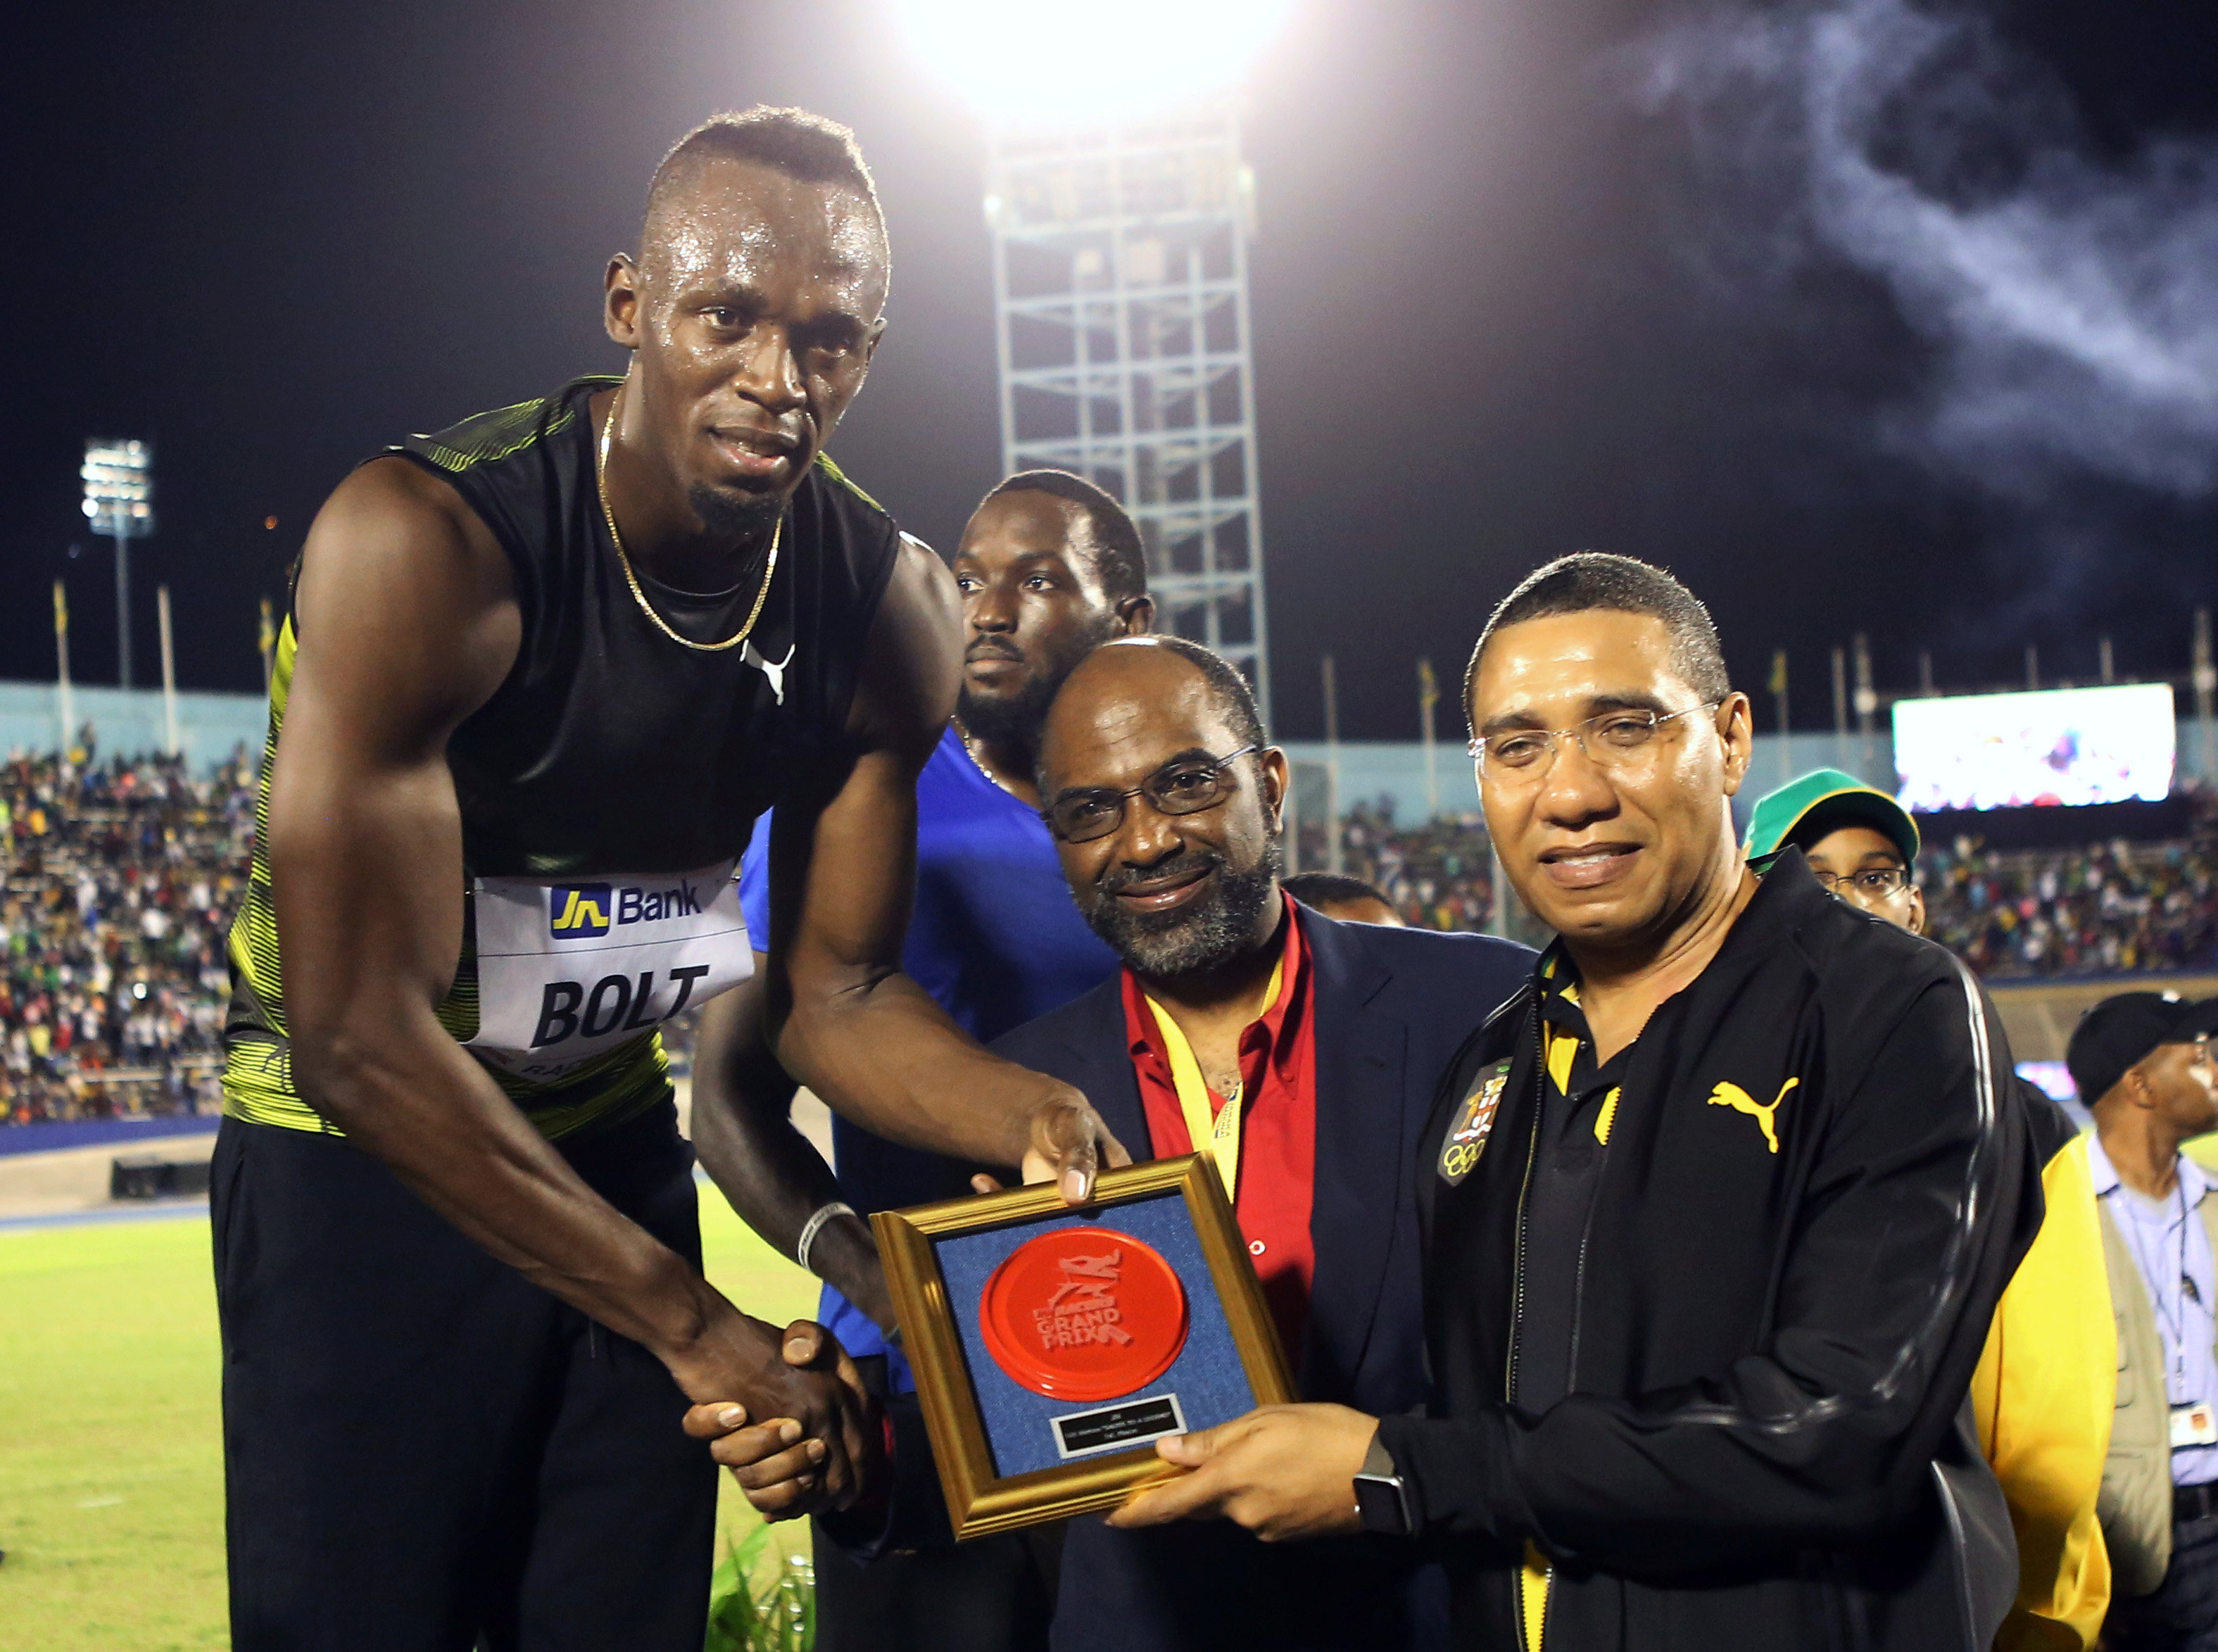 Athletics: Nervous Bolt wins final 100m race on home soil